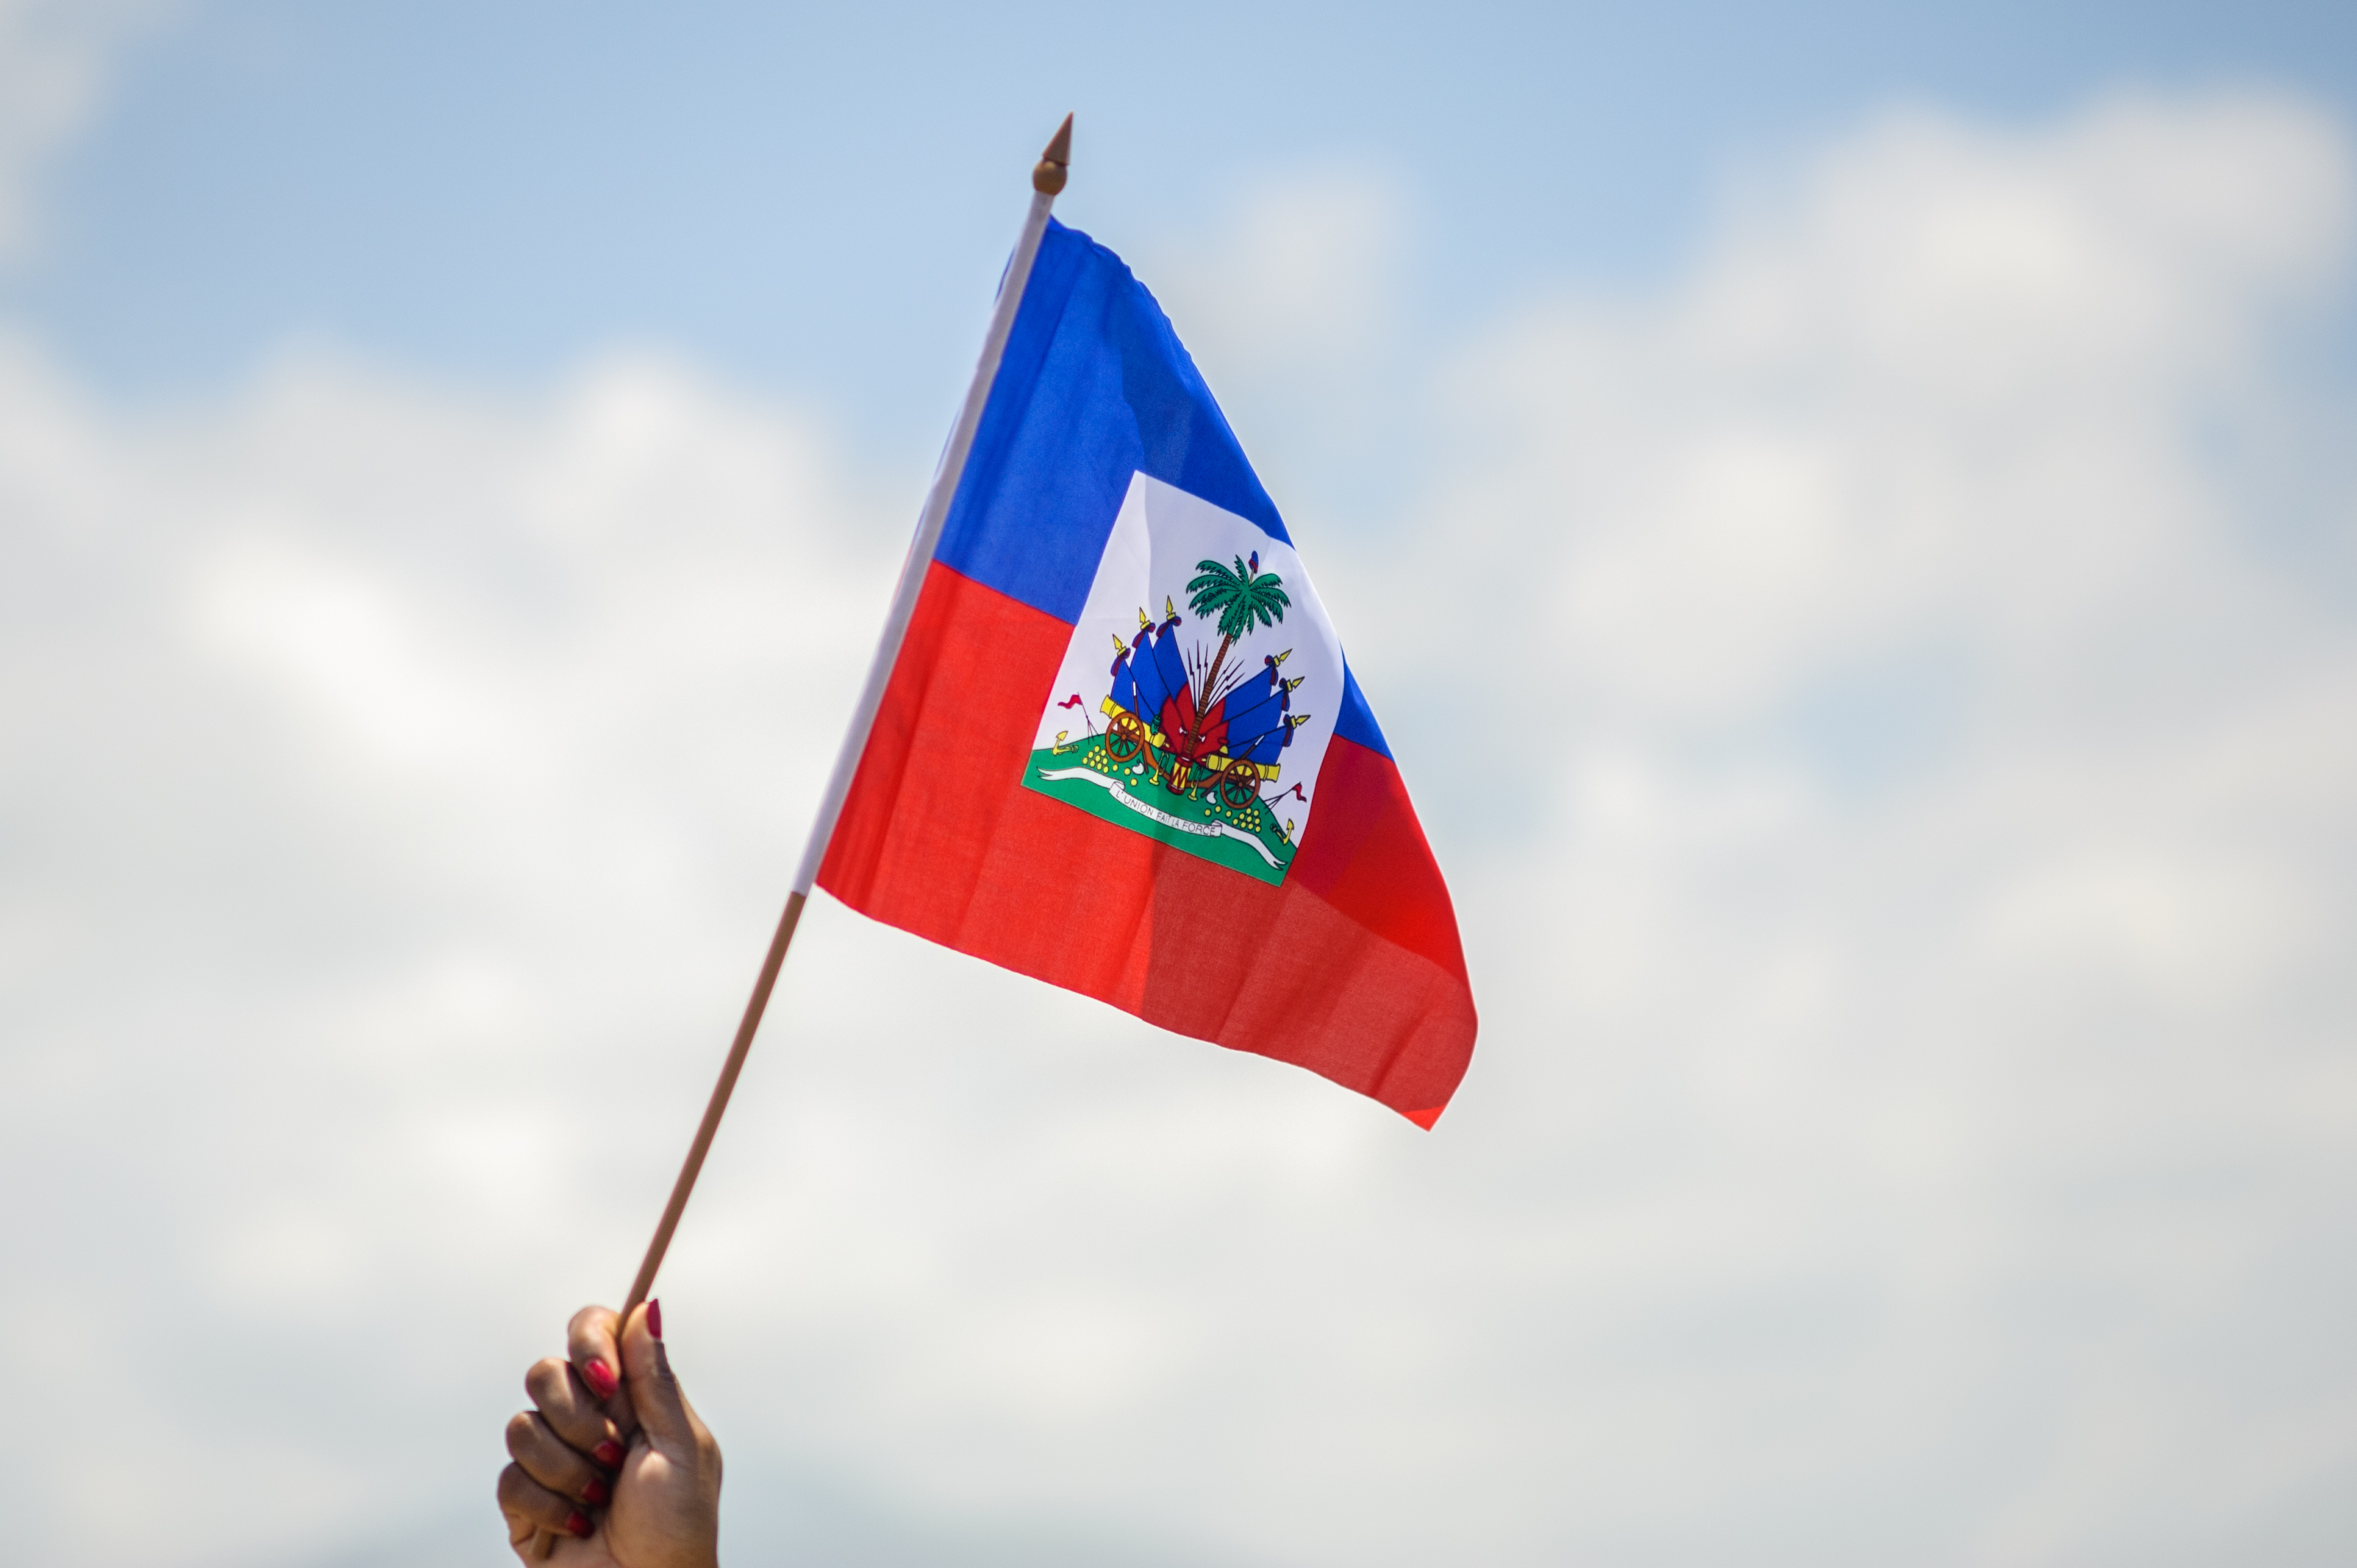 Flag of Haiti, Image: Ayiti Drapo